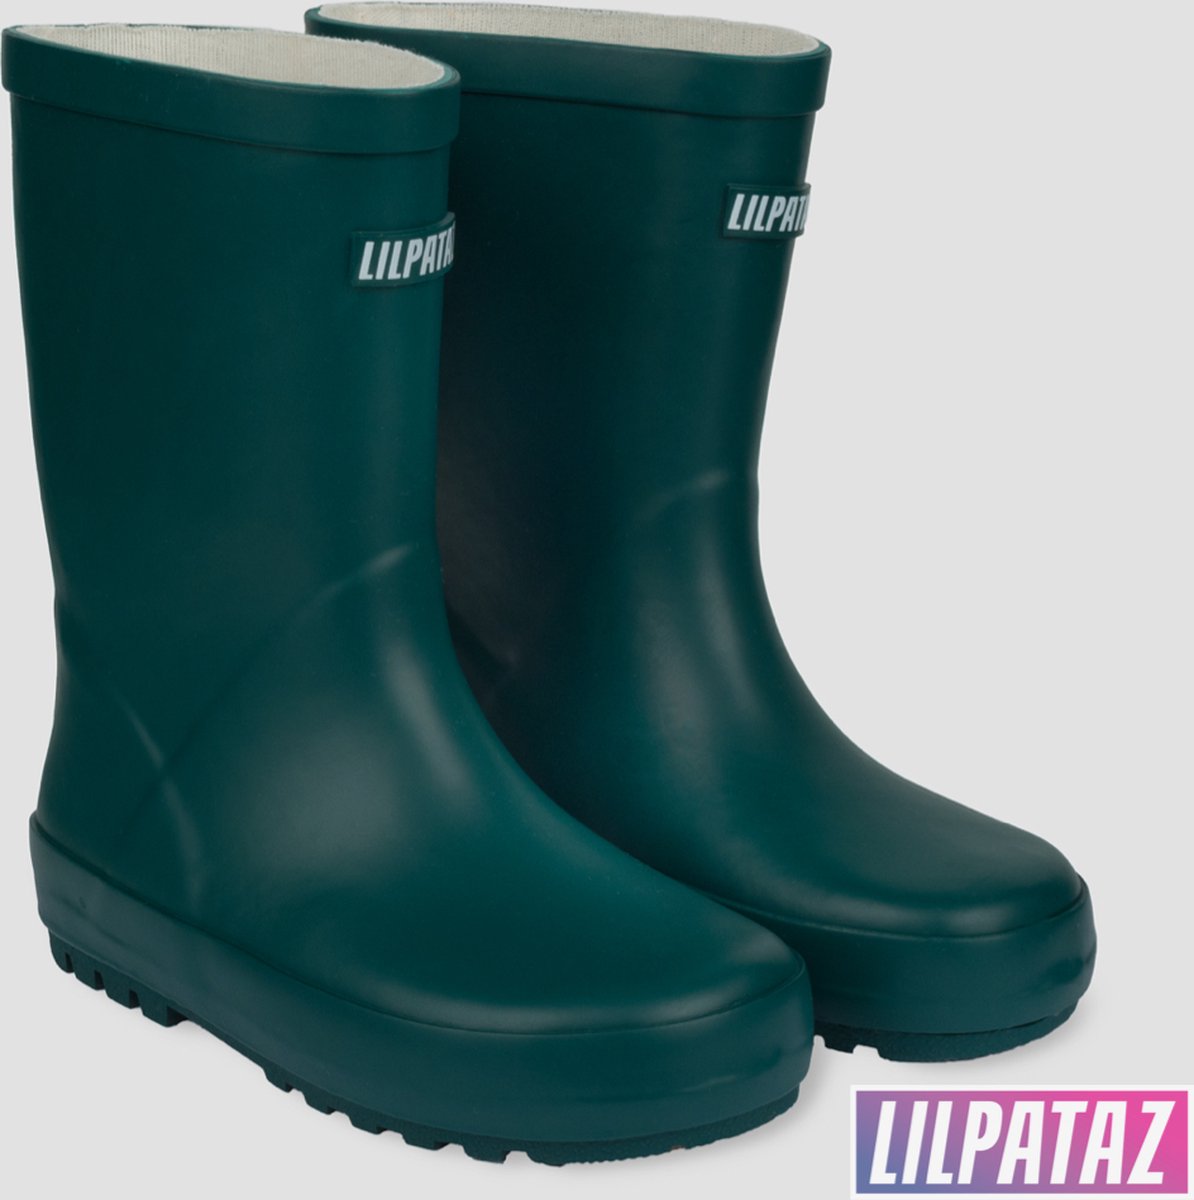 LilPataz Rainboot - Regenlaars kinderen - Jongens Meisjes - Groen - kinder regenlaarzen - Maat 23